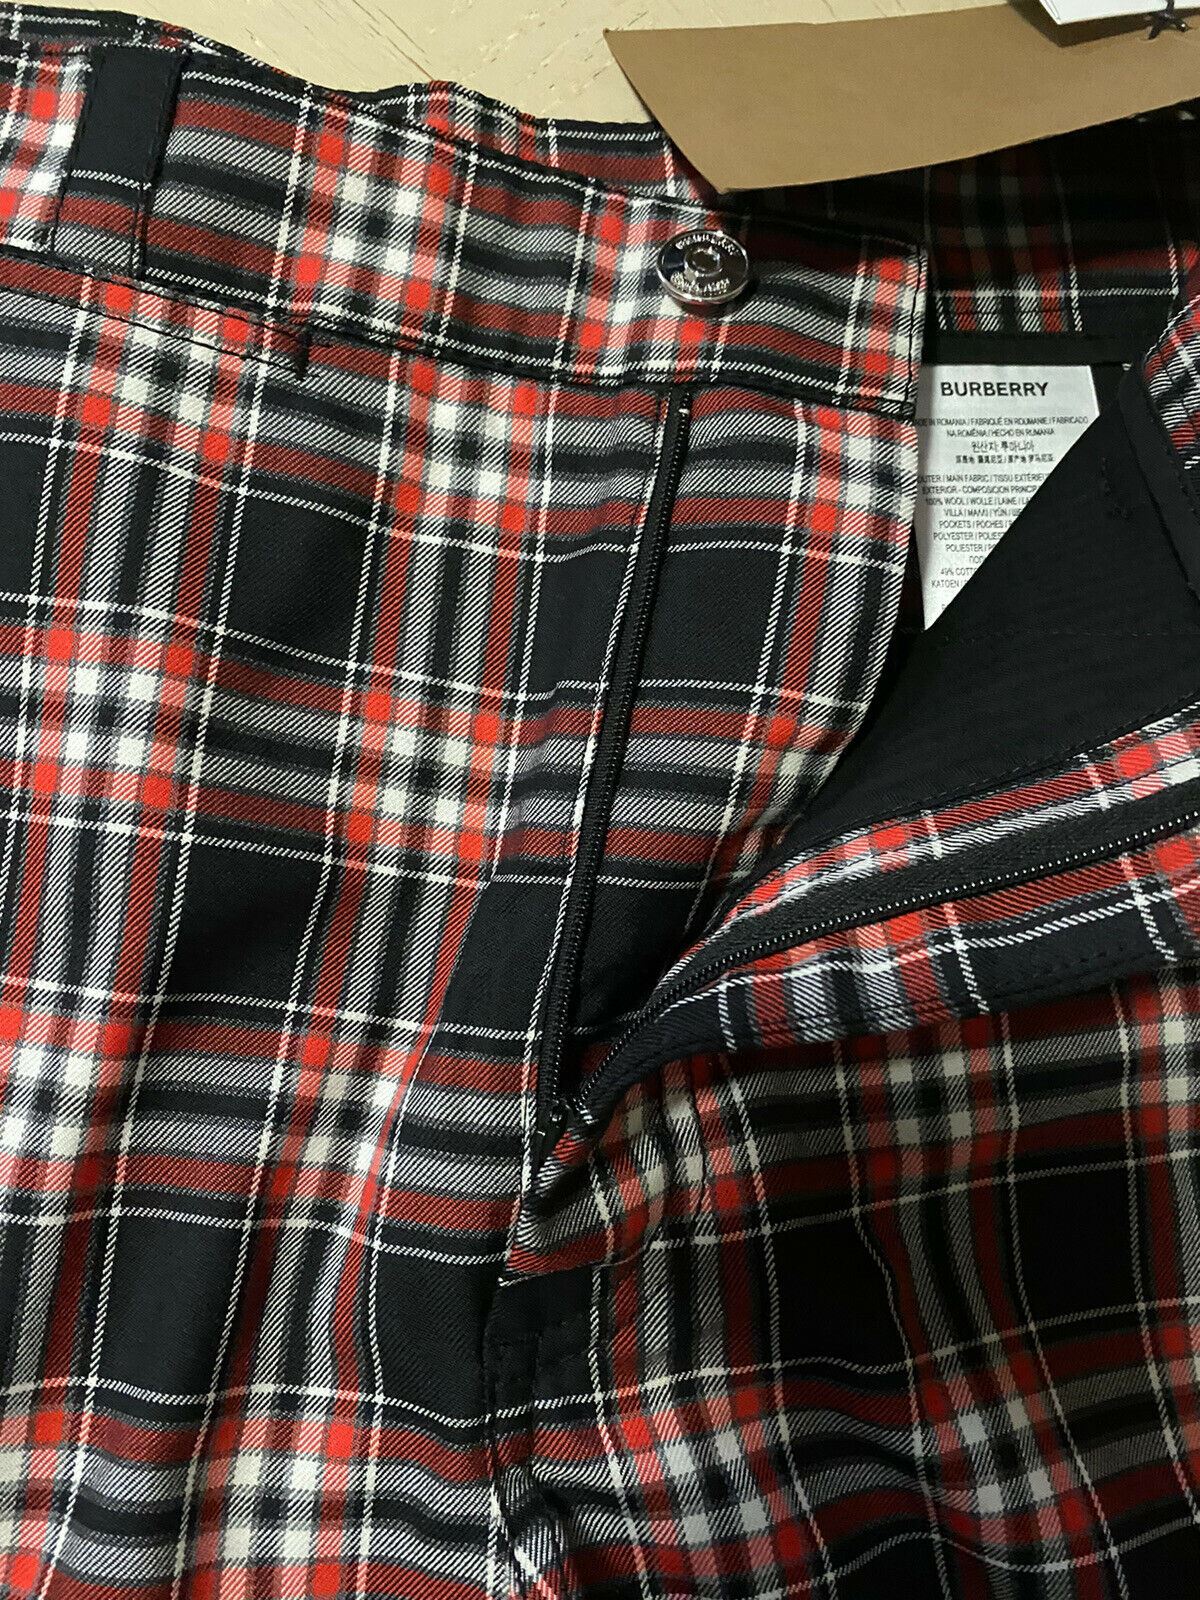 NWT $550 Мужские шорты Burberry Черный/Красный Размер 36 США (52 ЕС)